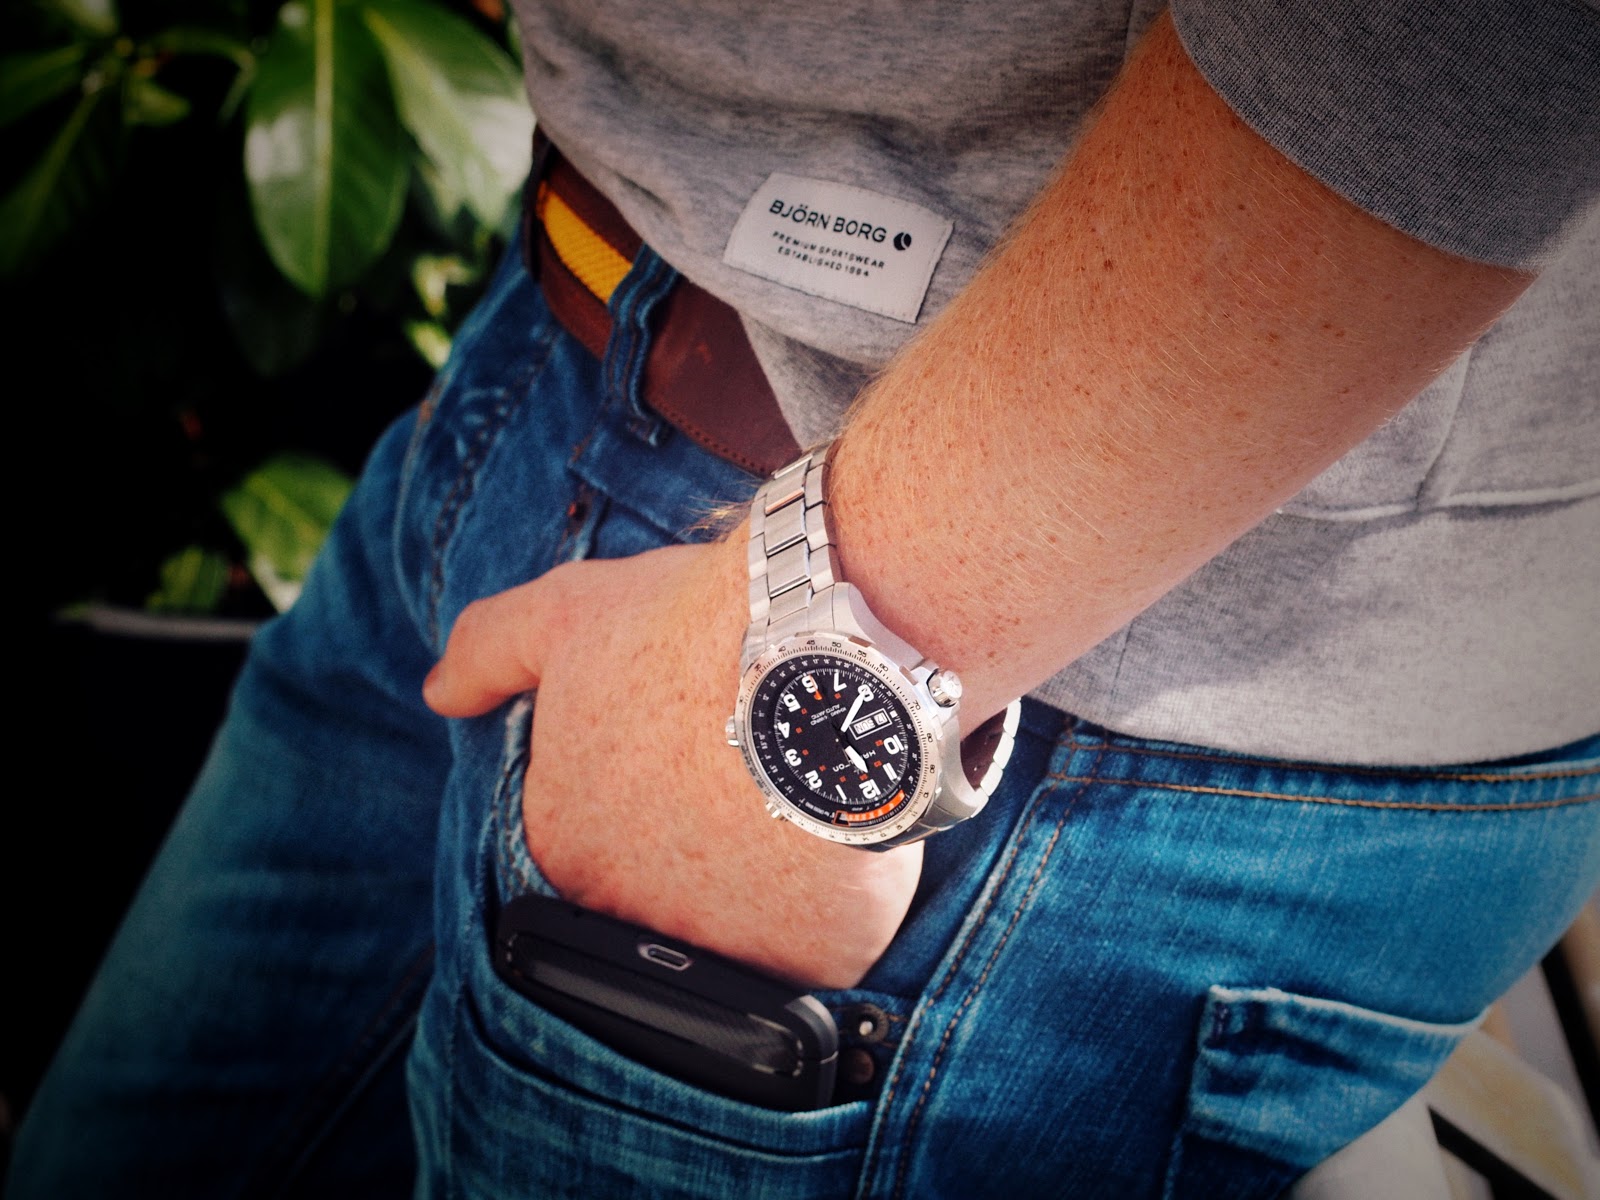 Eine Hand steckt in der Hosentasche und am Arm hängt eine Hamilton Uhr aus Edelstahl